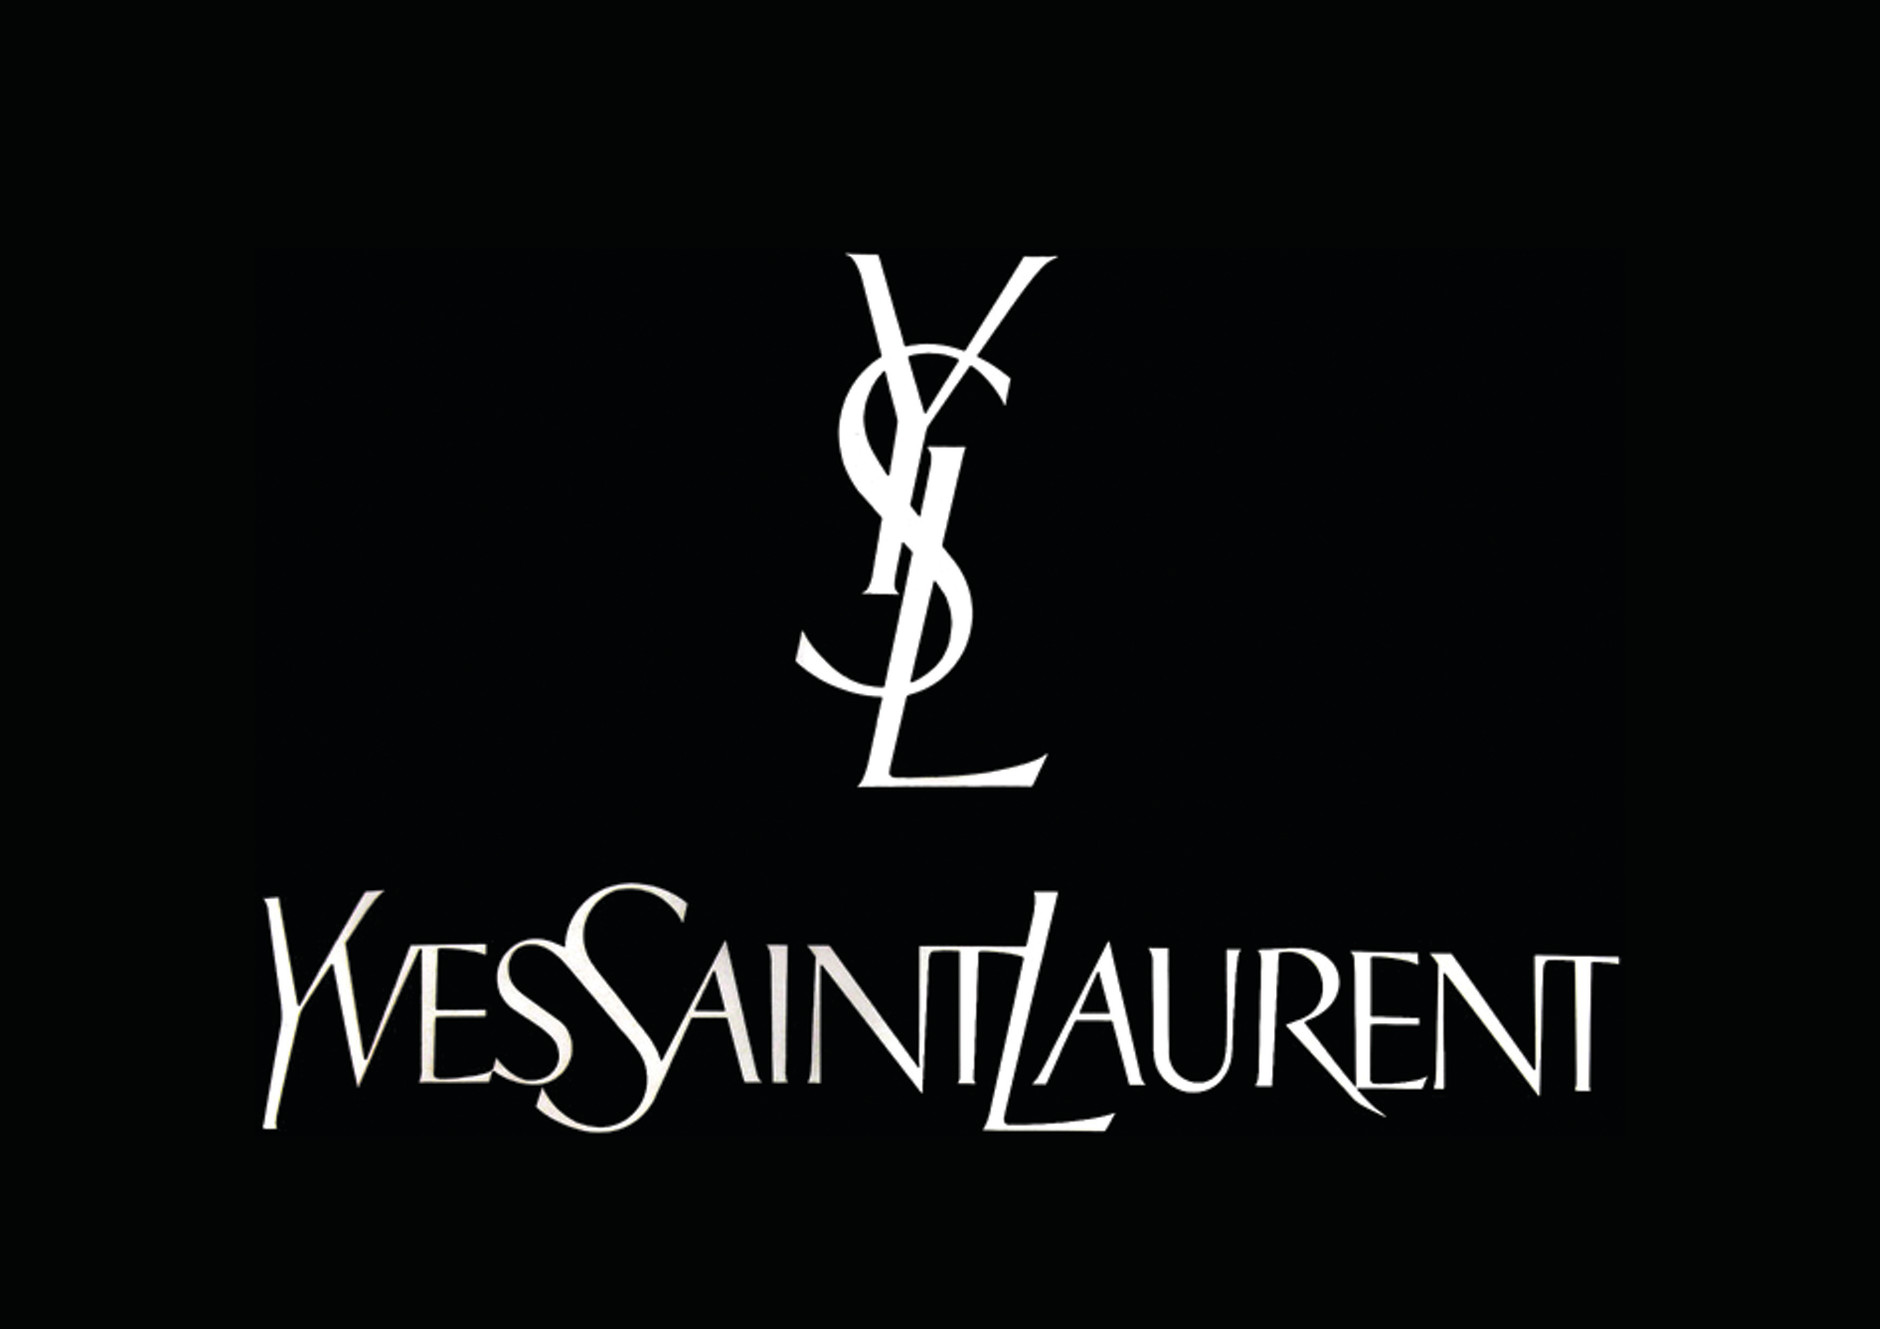 EVA & KAIA GERBER for Campaign YVES SAINT LAURENT Paris 2019 (VIDEO)